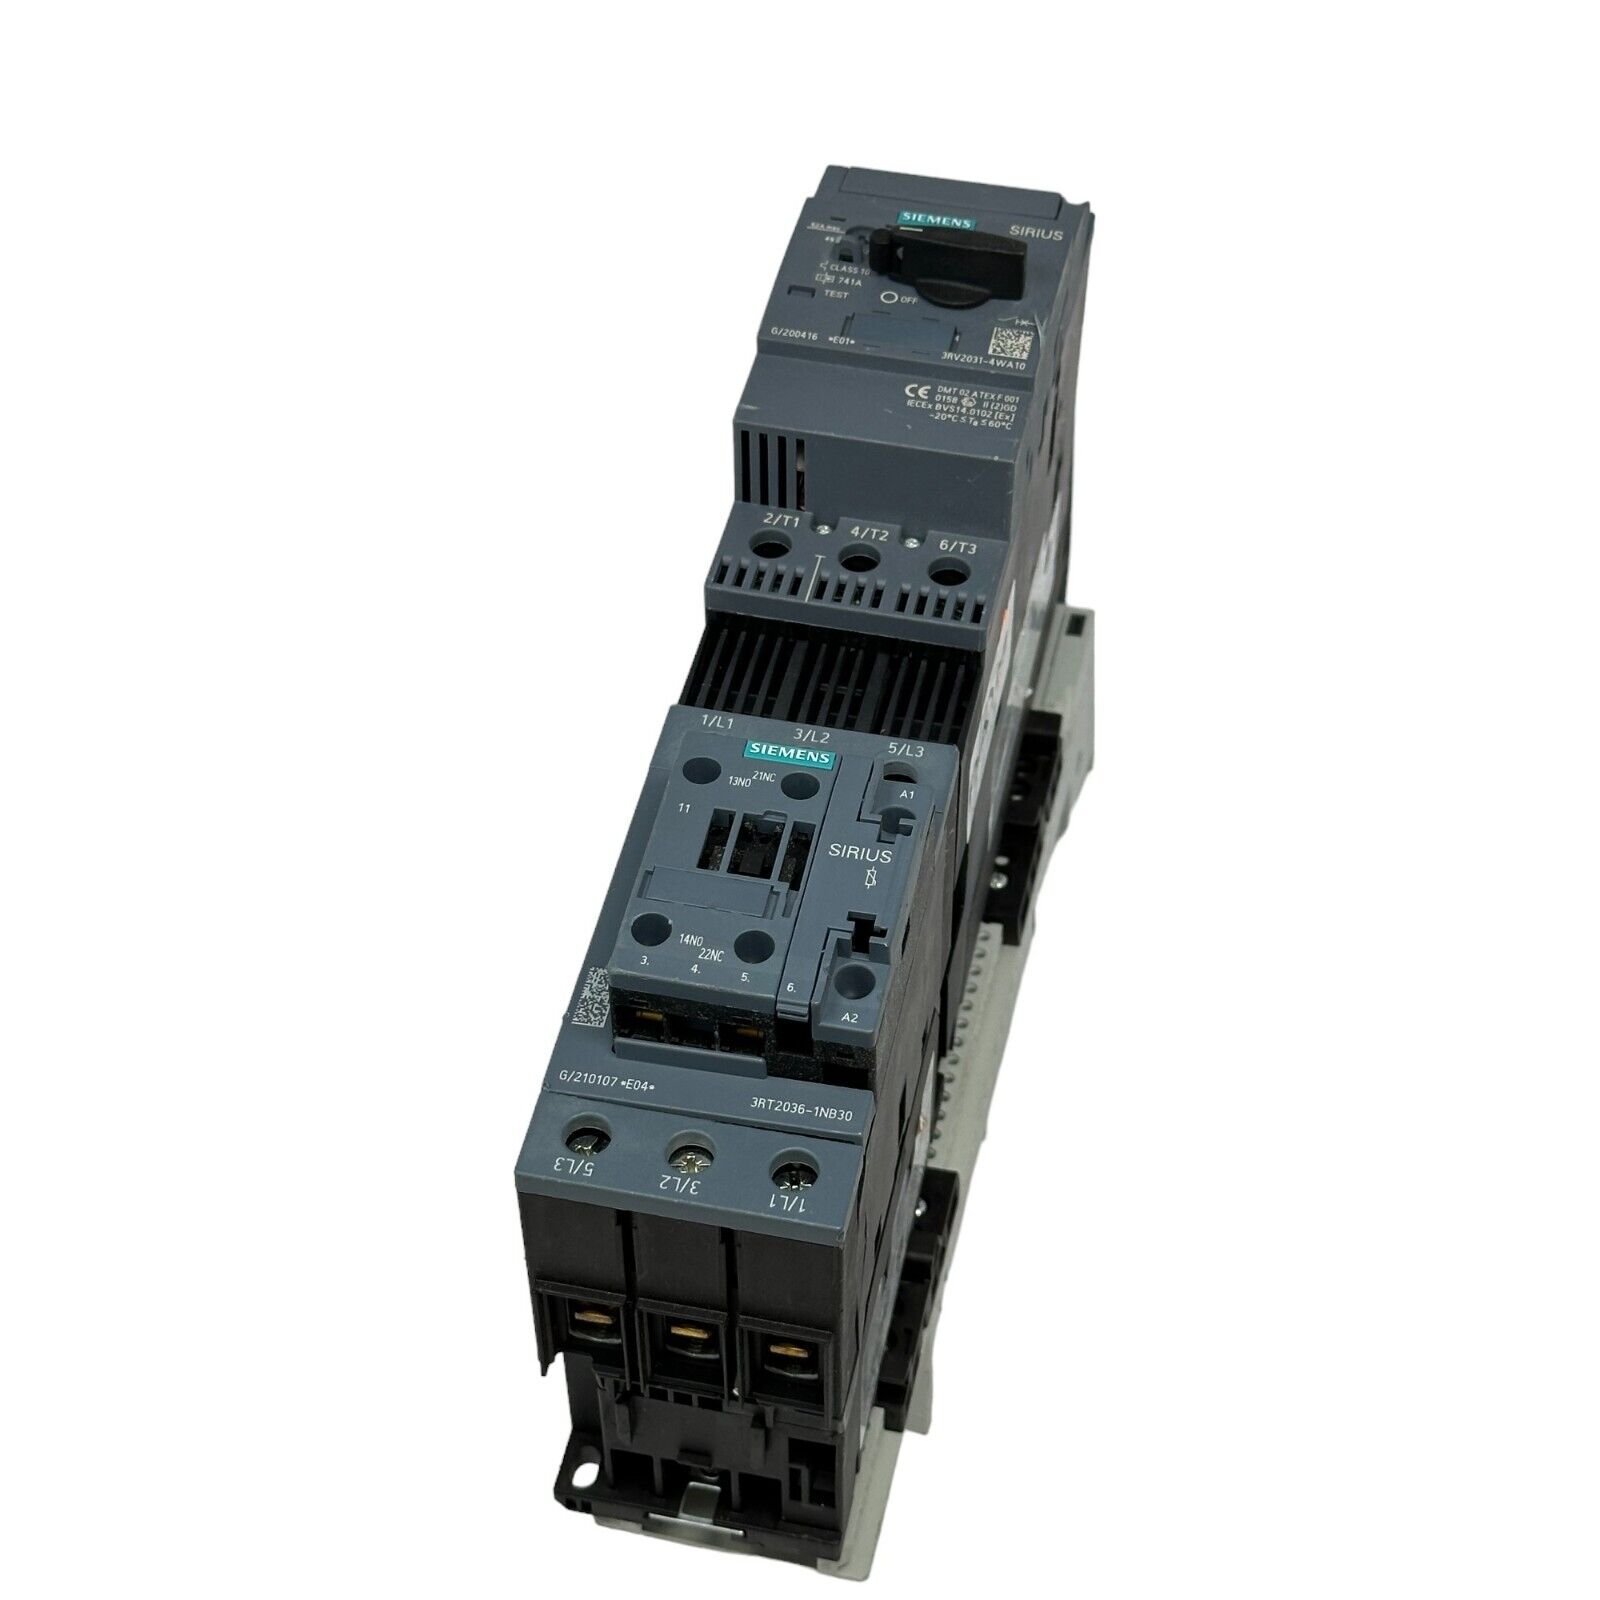 Siemens Sirius 3RV2031-4WA10 Circuit Breaker with Siemens Sirius 3RT2036-1NB30